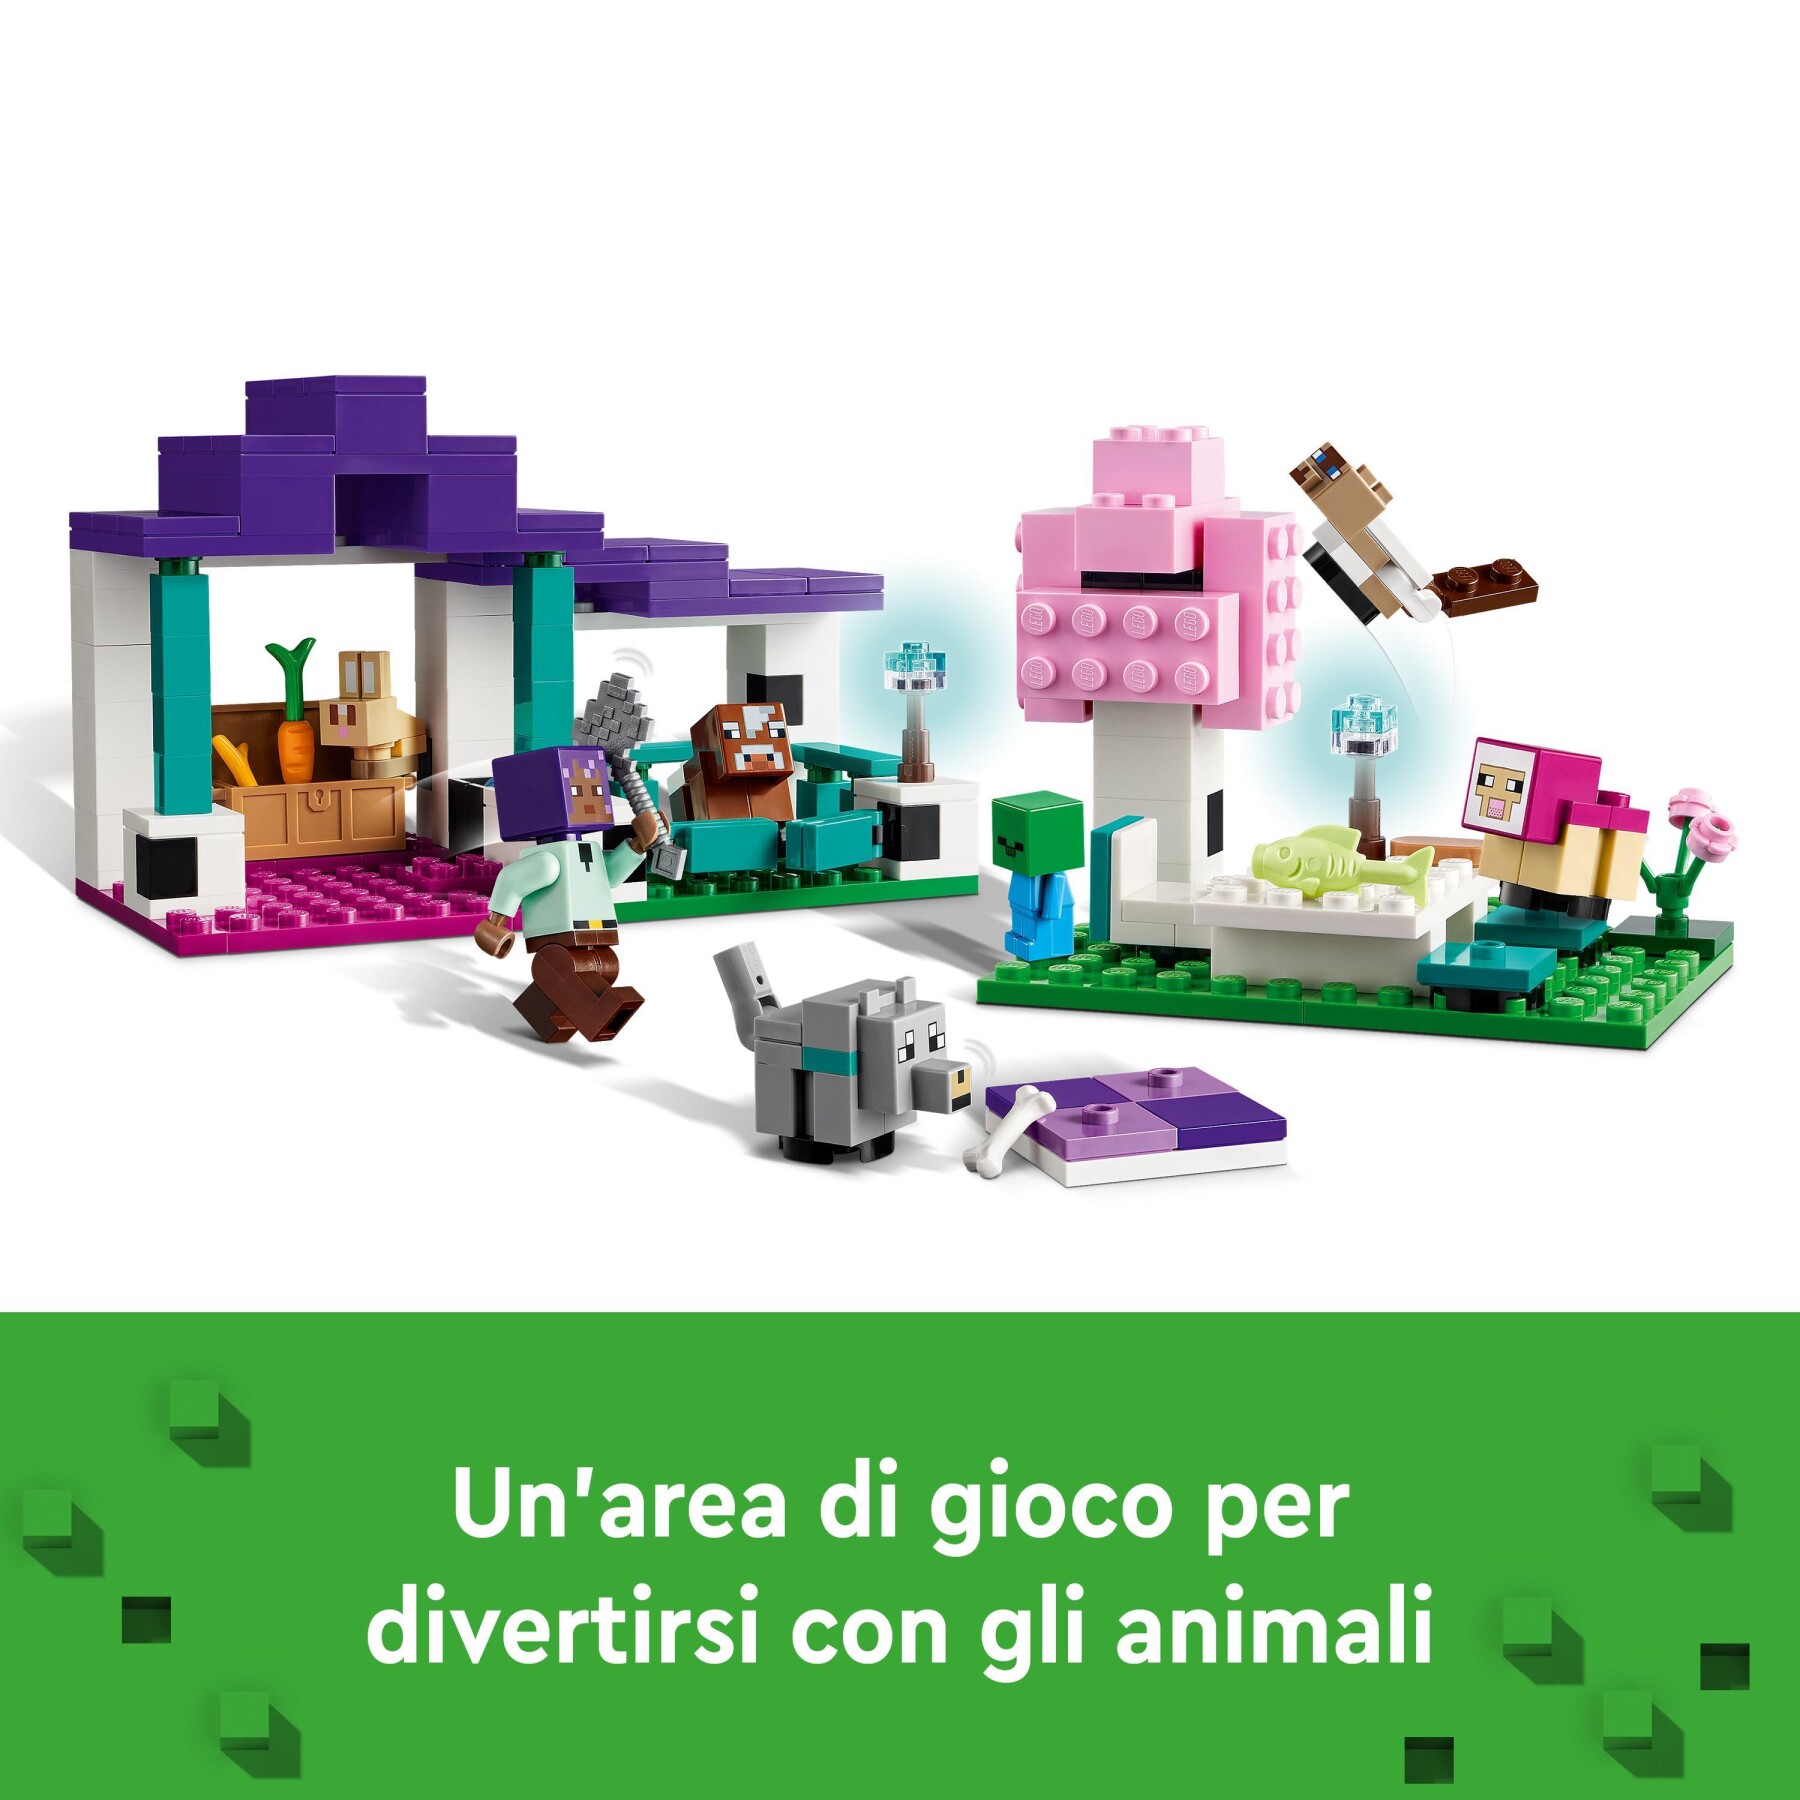 Lego minecraft 21253 il santuario degli animali giocattolo per bambini e fan di 7+ anni con bioma delle pianure e personaggi - MINECRAFT